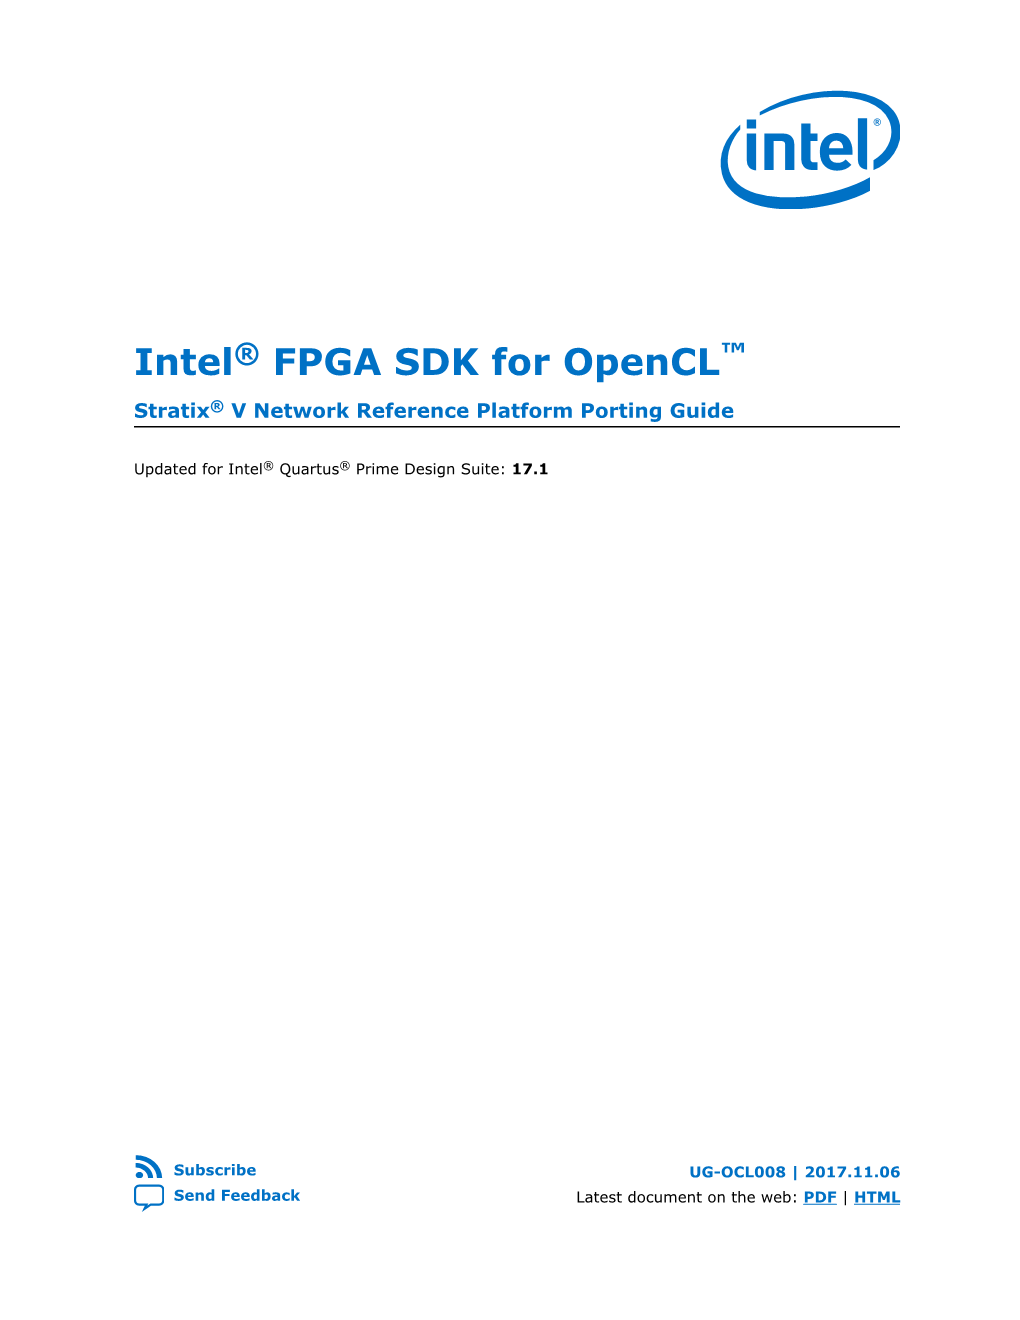 Intel® FPGA SDK for Opencl™ Stratix® V Network Reference Platform Porting Guide